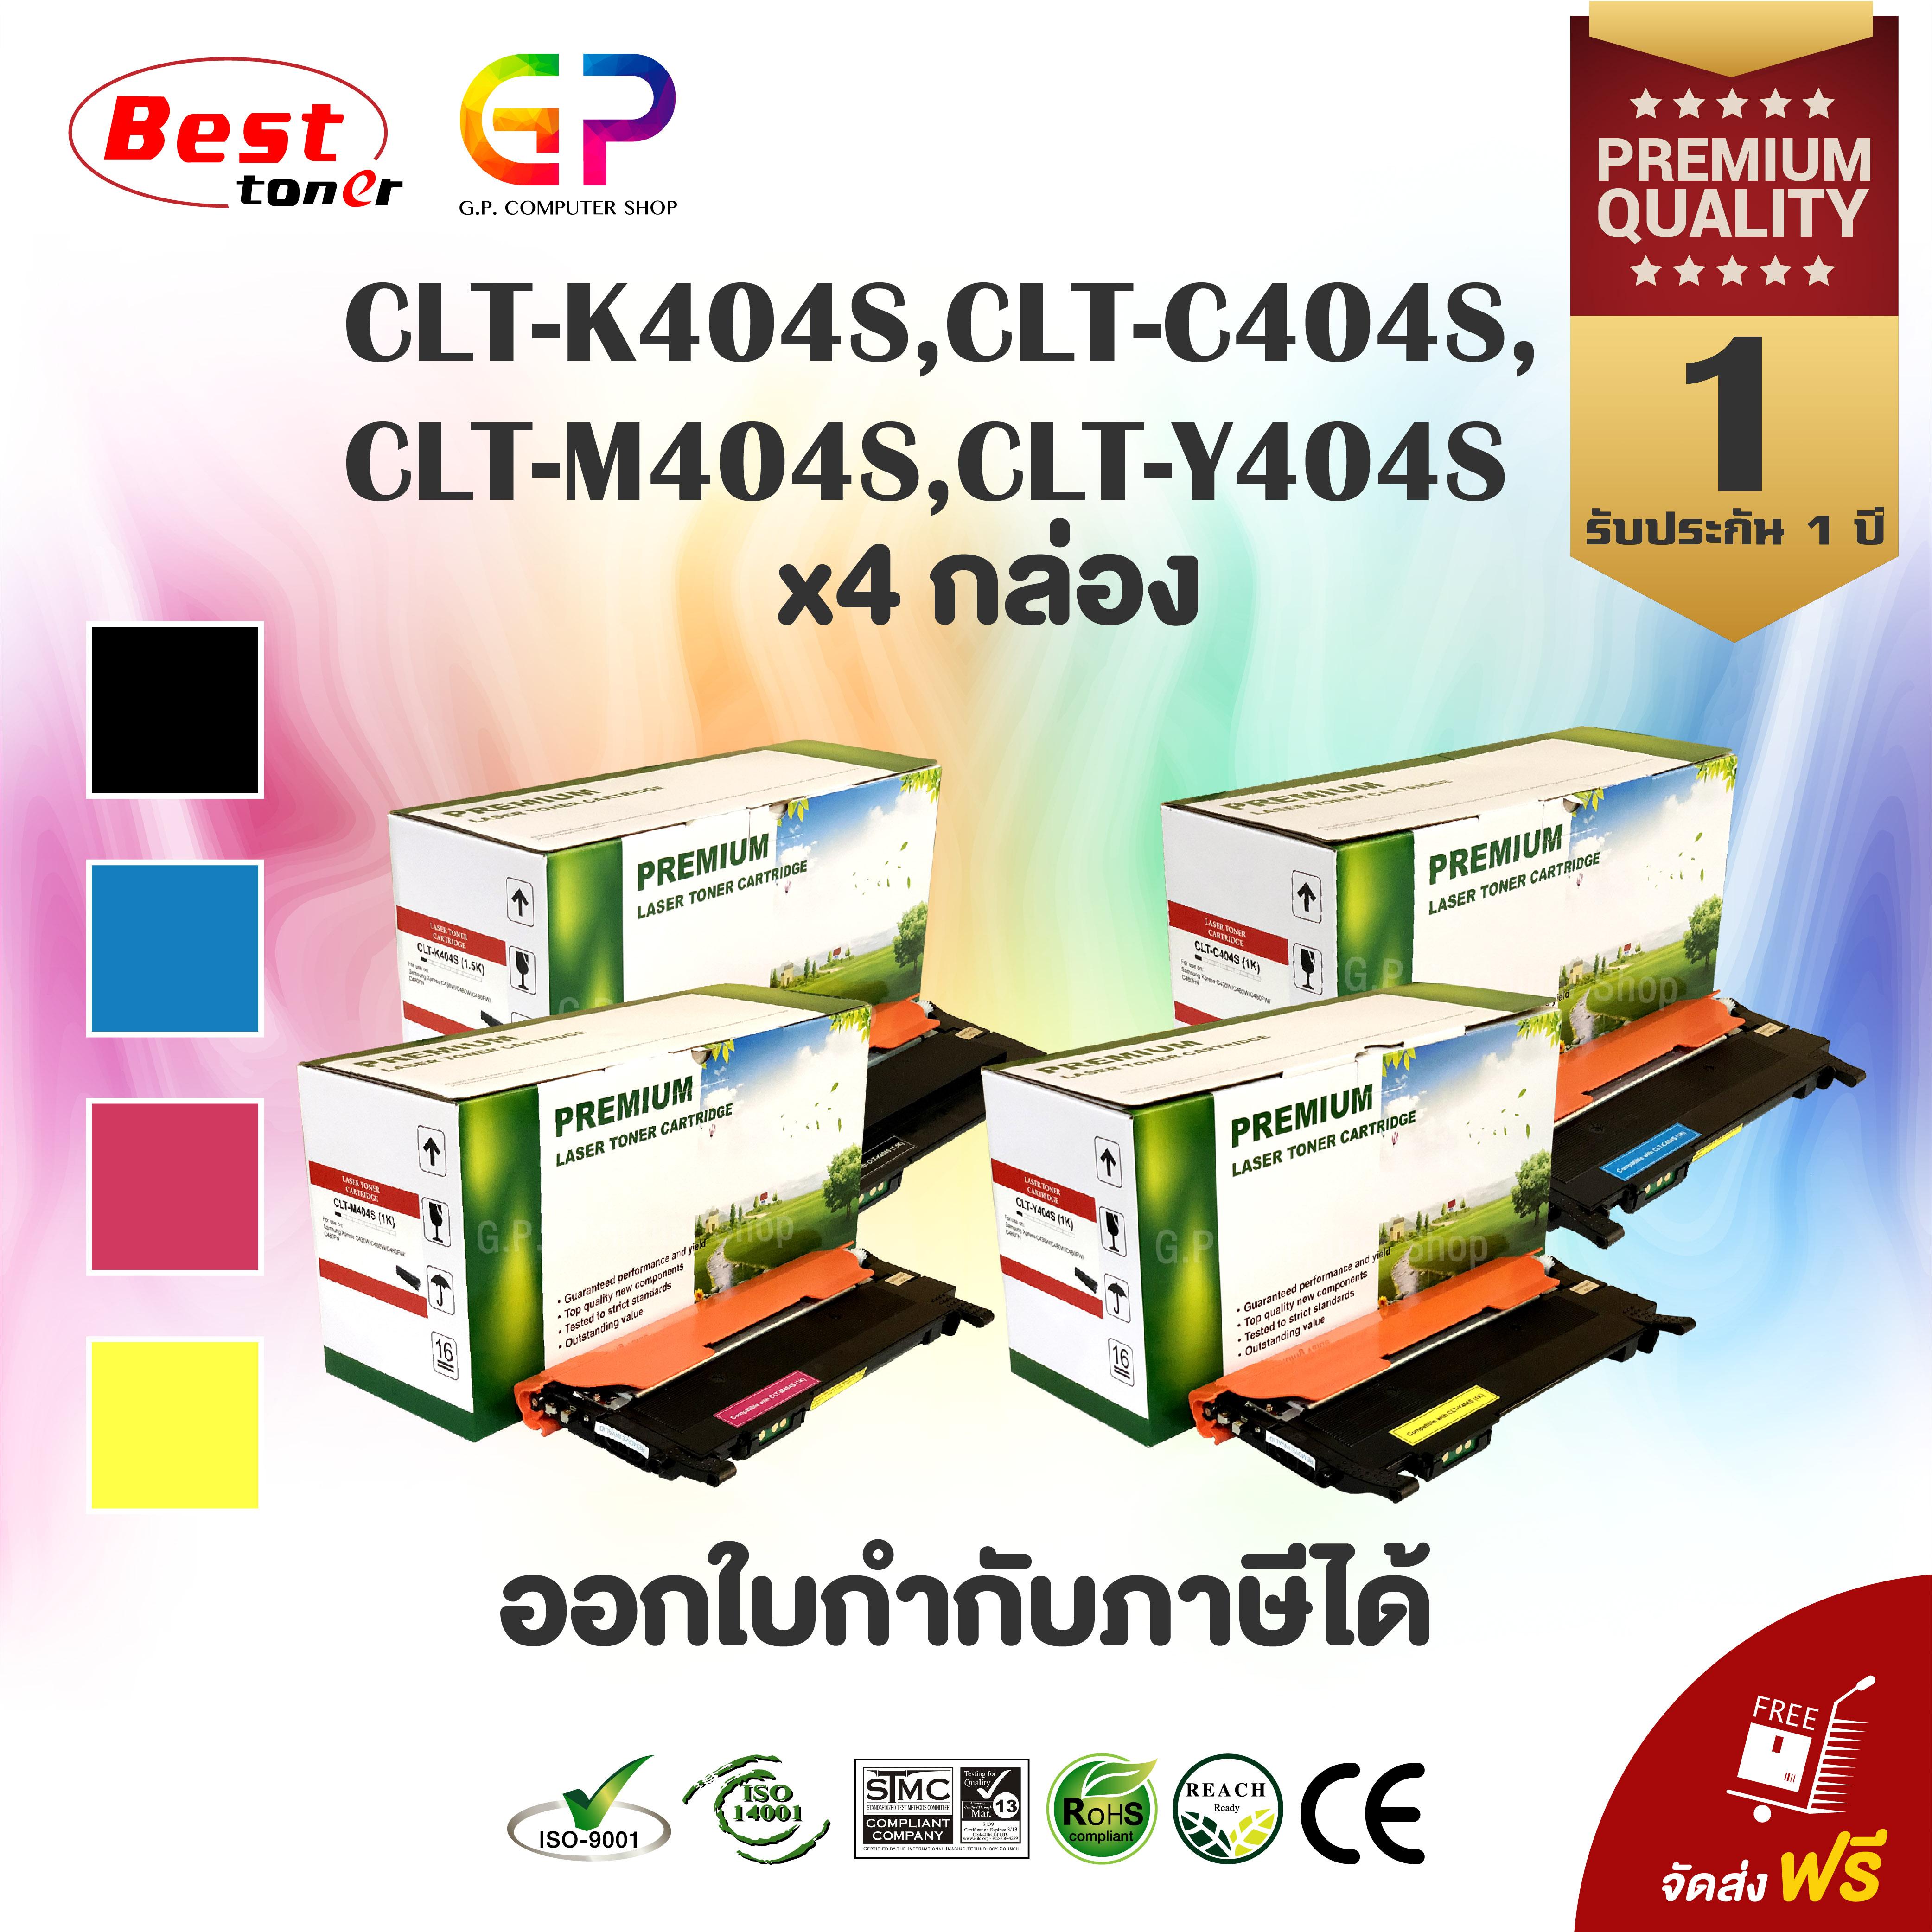 Boom+ / Samsung / CLT-K404S / CLT-C404S / CLT-M404S / CLT-Y404S / CLT-404S / หมึกพิมพ์เลเซอร์เทียบเท่า / Samsung Xpres / SL-C430 / SL-C430W / SL-C480 / SL-C480W / SL-C480FW / สีดำ,ฟ้า,แดง,เหลือง / 1 ชุด